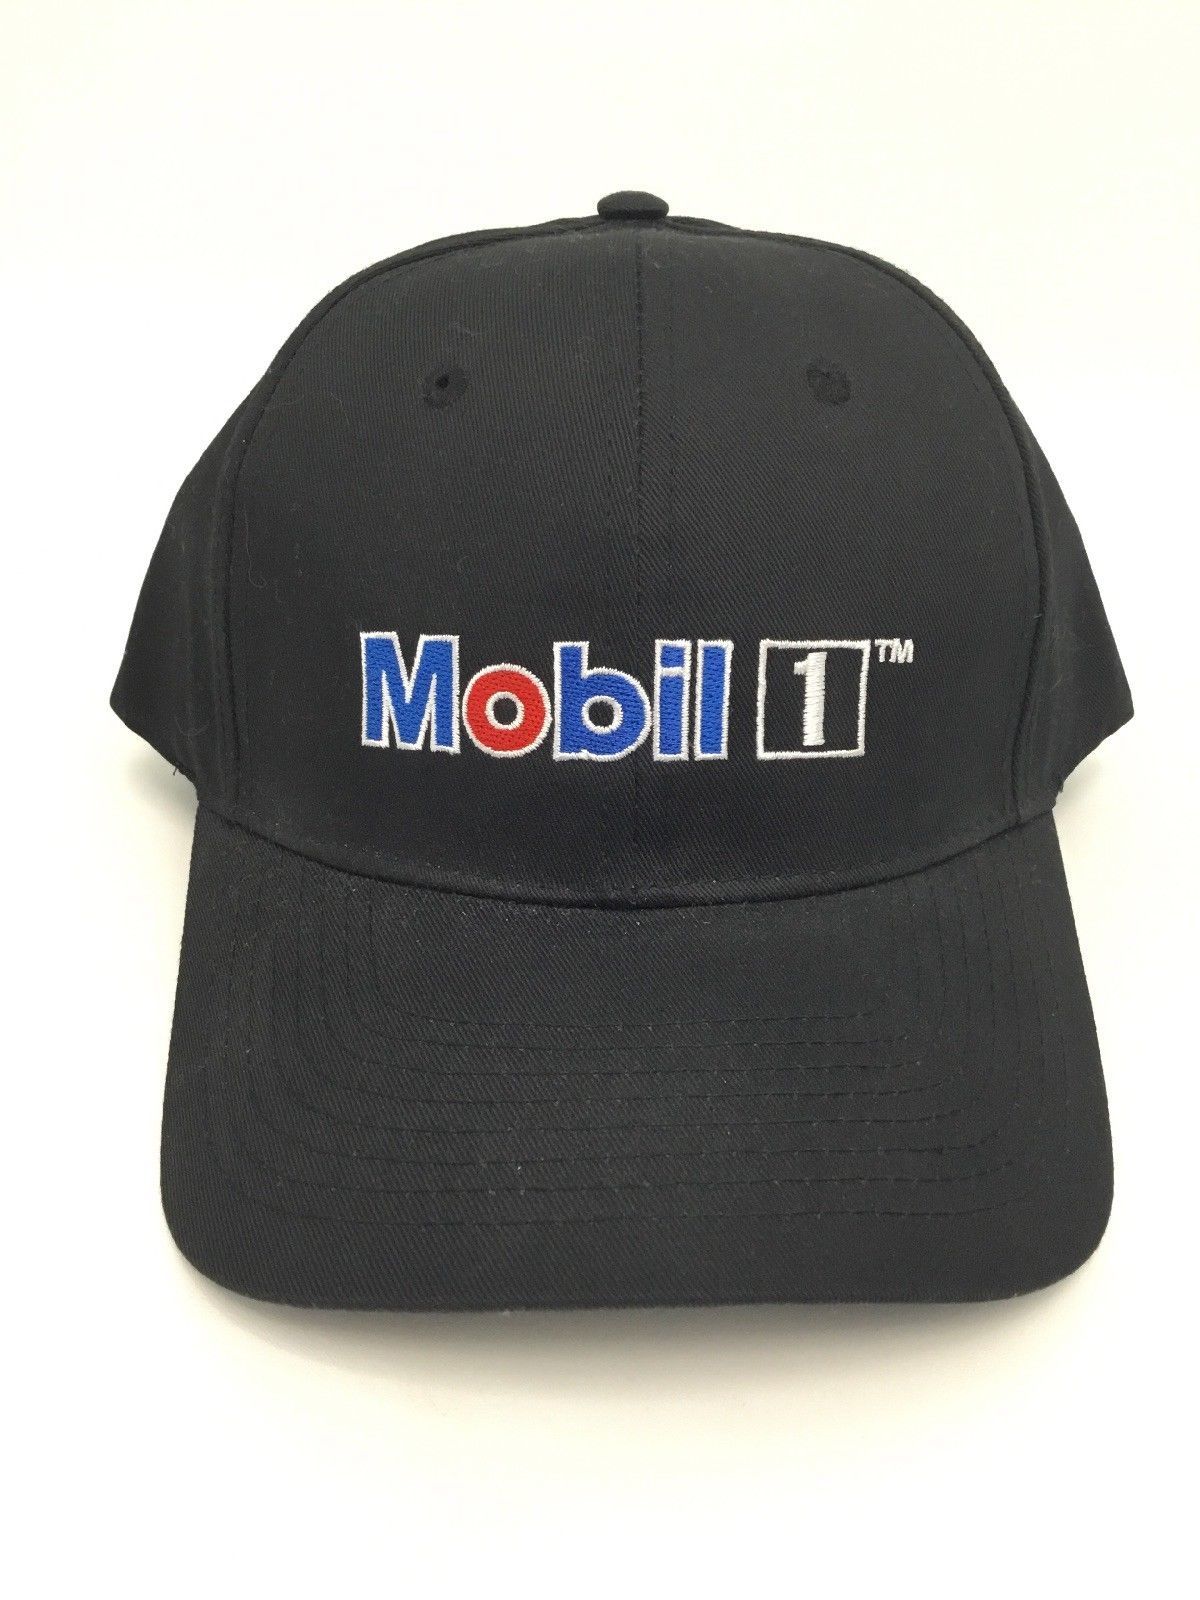 Mobil 1 Black Trucker Hat Baseball Cap Adjustable Back BDA Red White ...